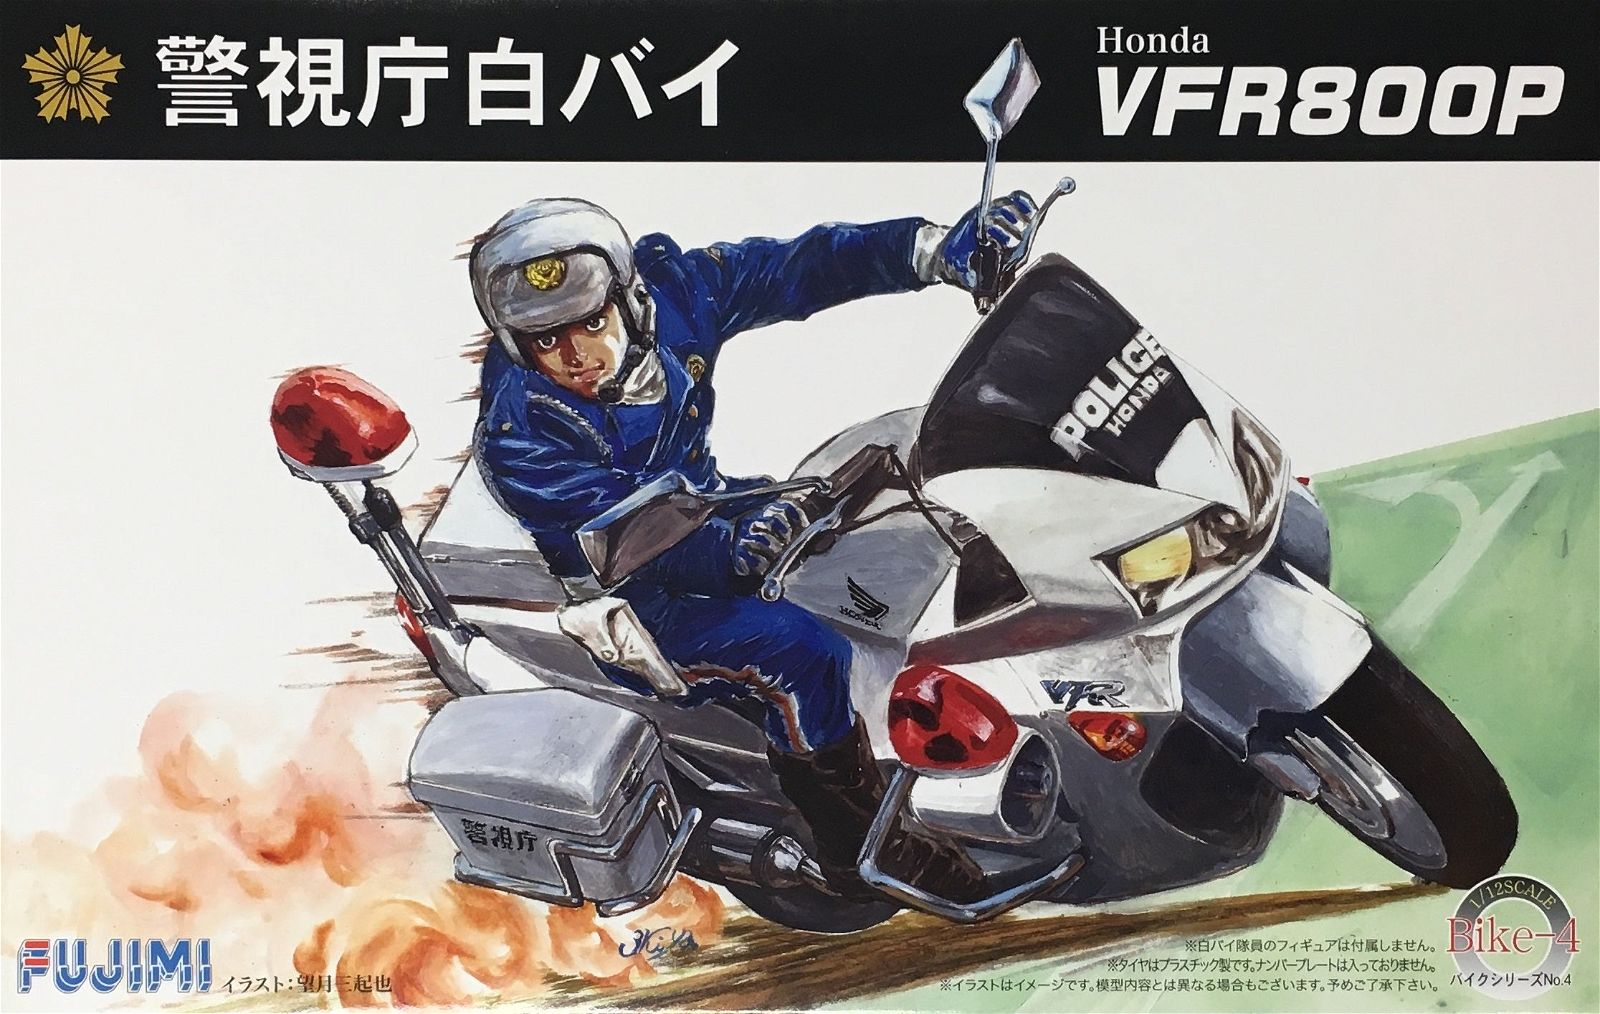 Fujimi 1/12 Honda VFR800P Motorcycle Police - BanzaiHobby